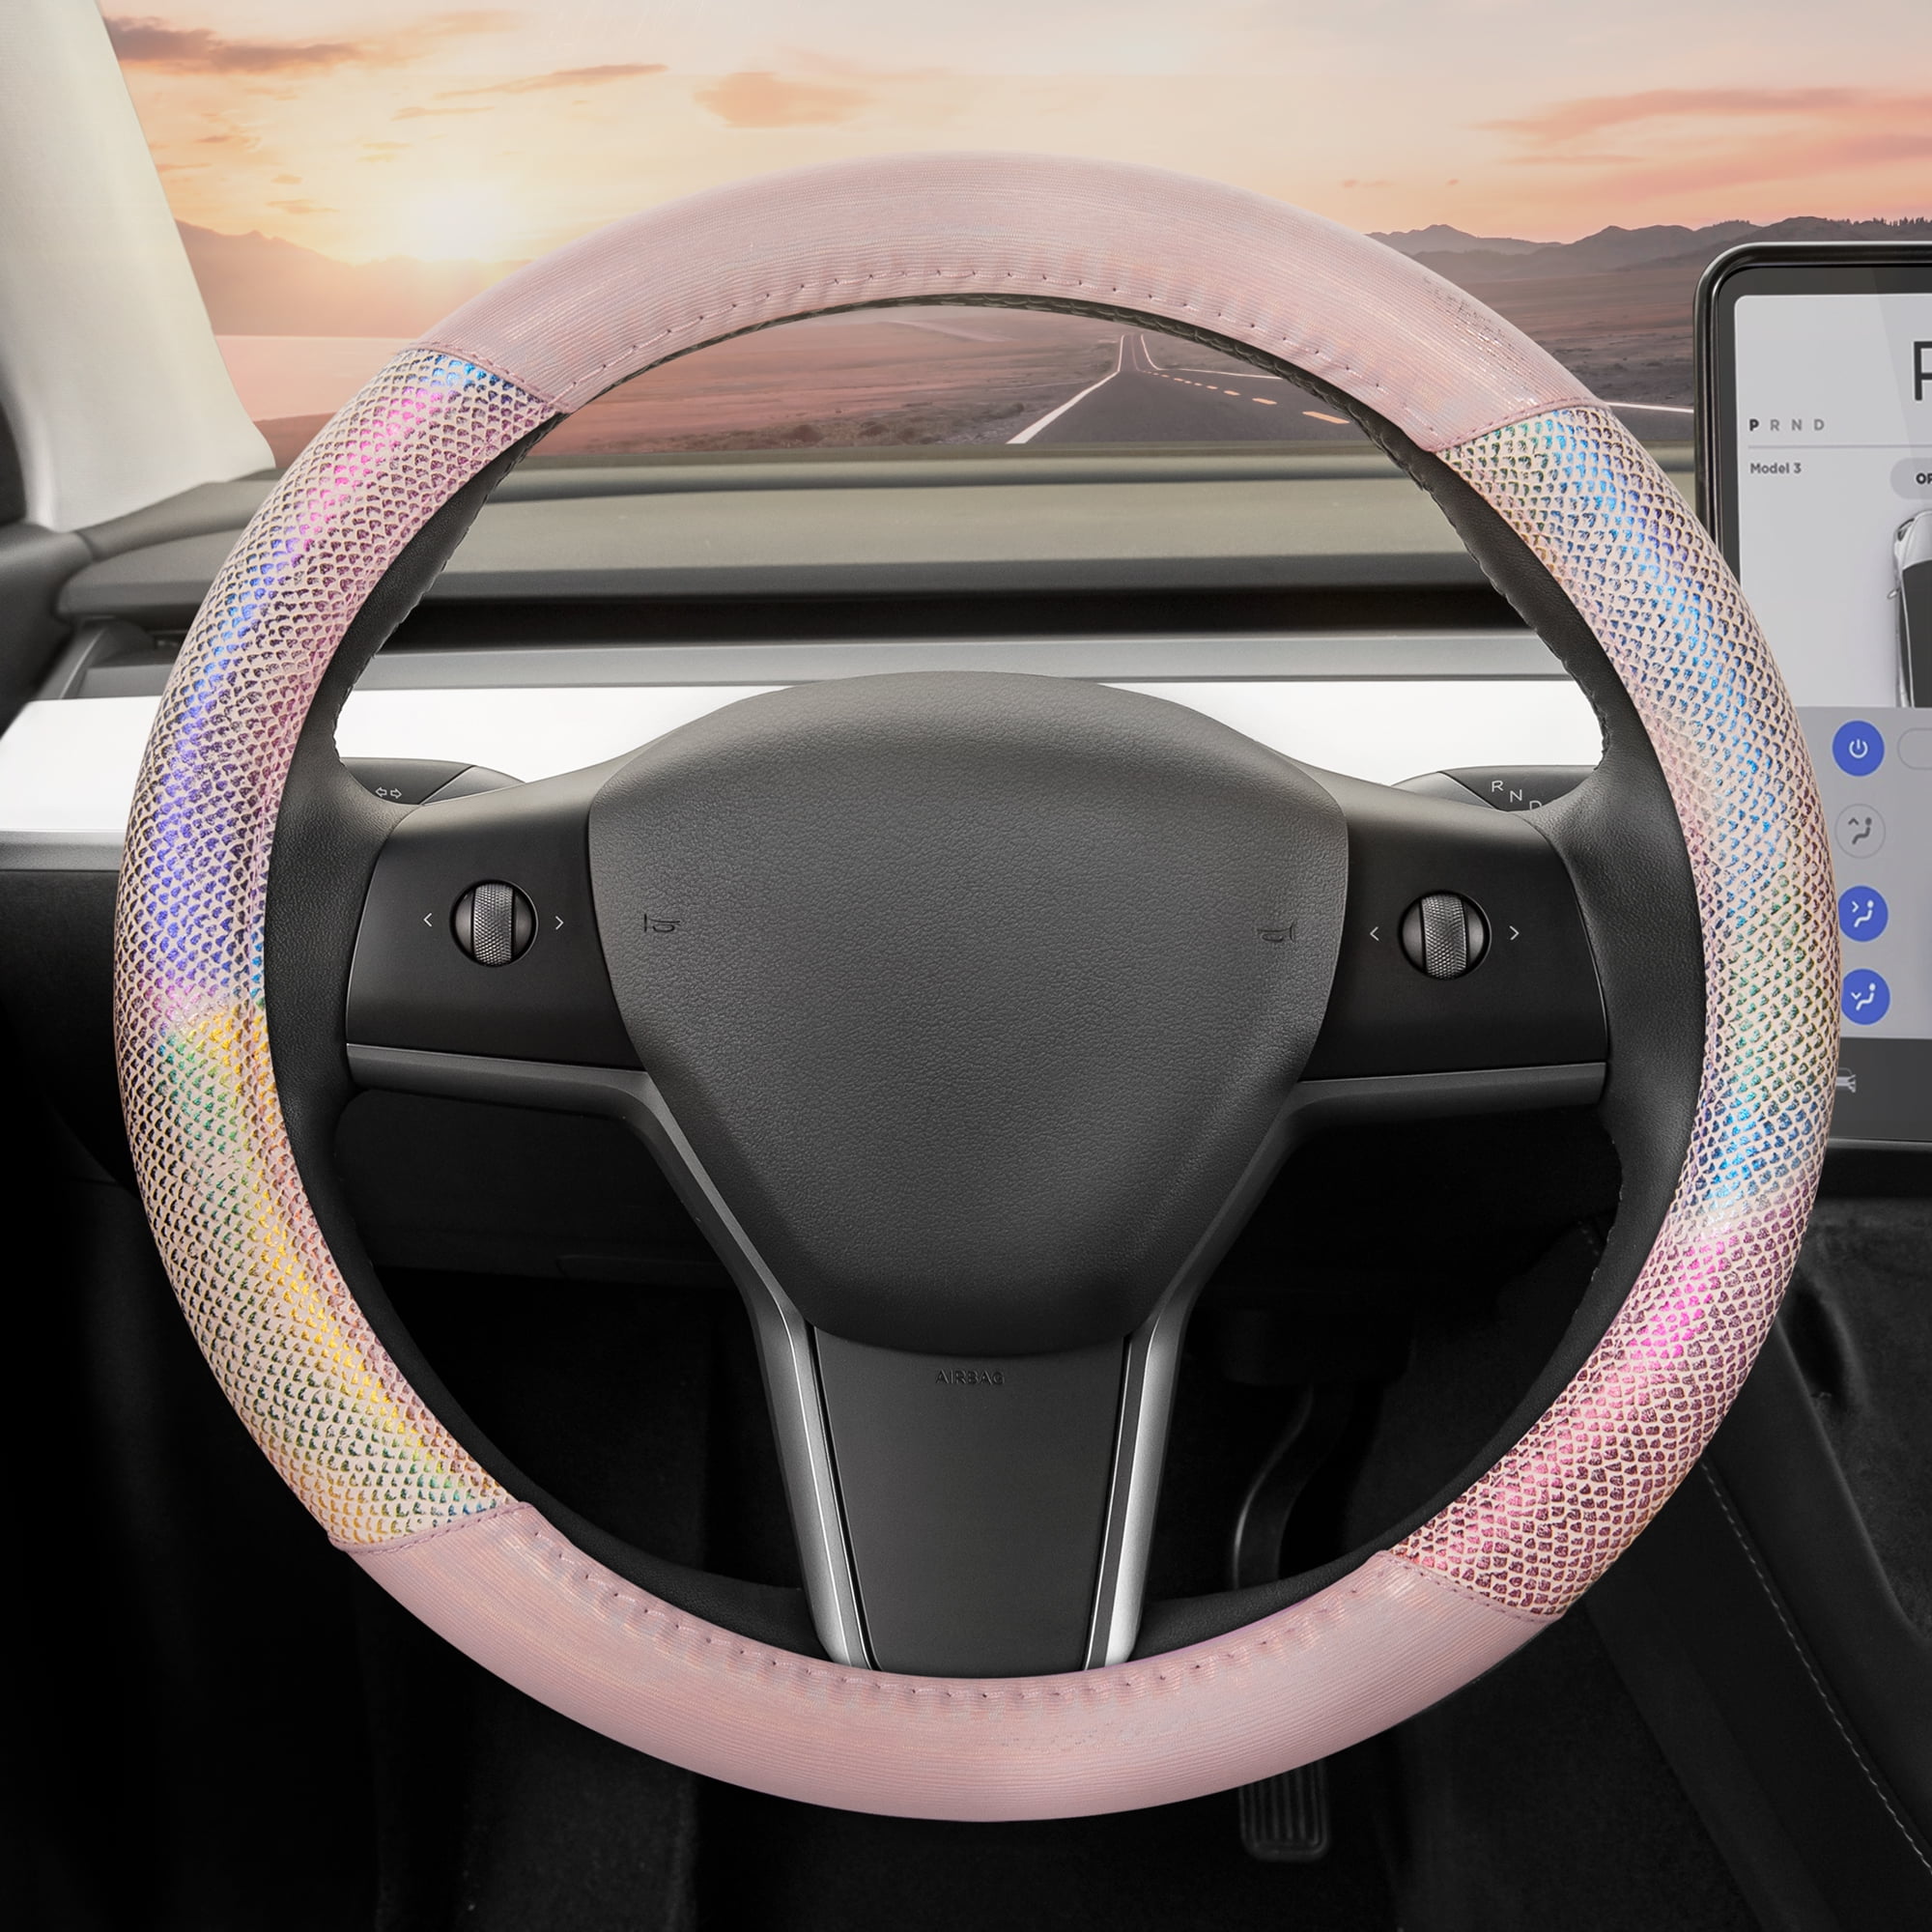 Silicone Auto Steering-Wheel Cover – Fulfillman